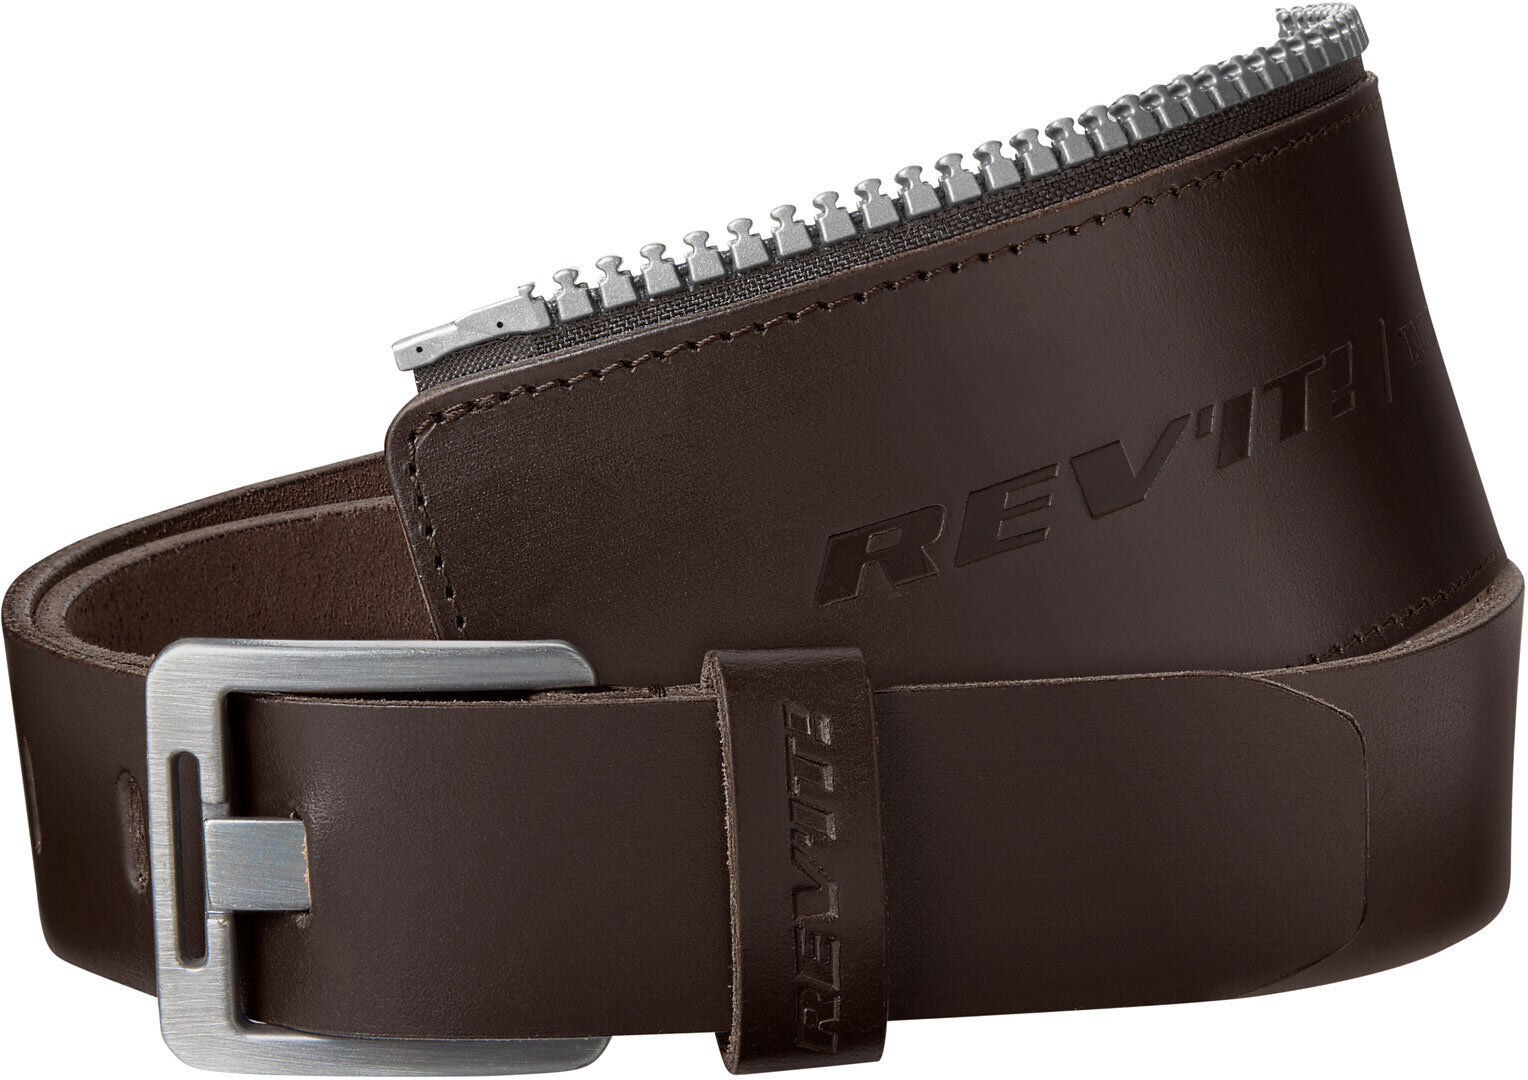 Revit Safeway 30 Belte 95 cm Brun